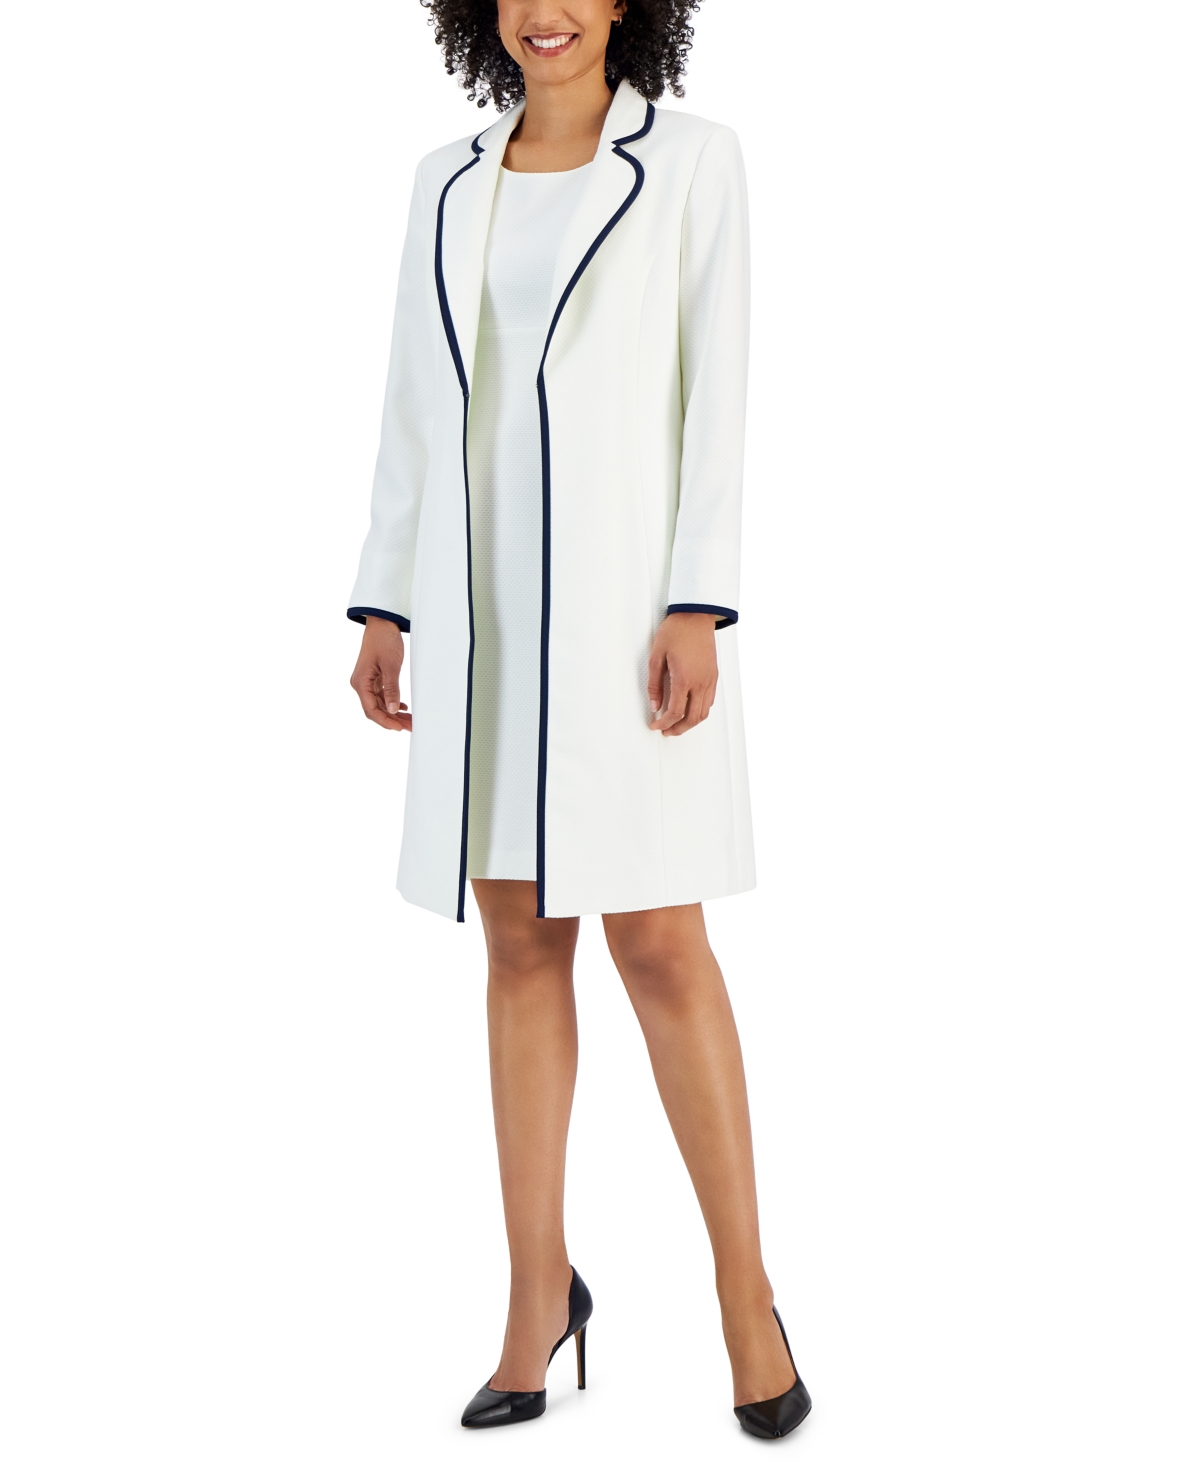 Jacquard Framed Sheath Dress Suit, Available Regular and Petite Sizes - White/Indigo